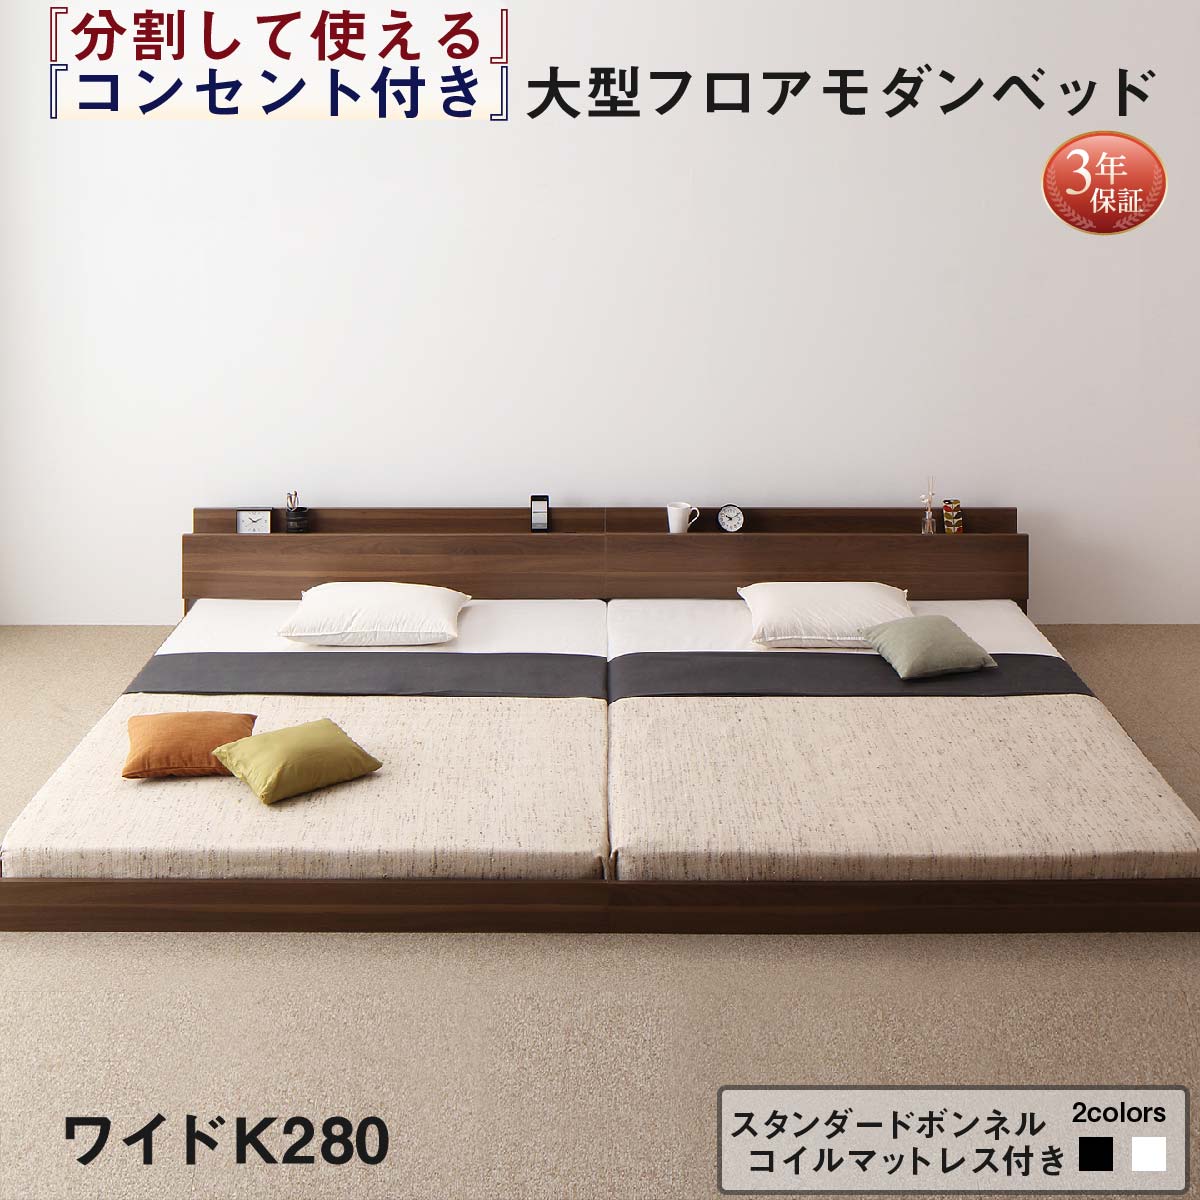 【フレームカラー:ウォルナットブラウン】【マットレスカラー:ホワイト】ファミリーベッド 連結ベッド 大型ベッド ファミリー ベッド 連結 家族ベッド